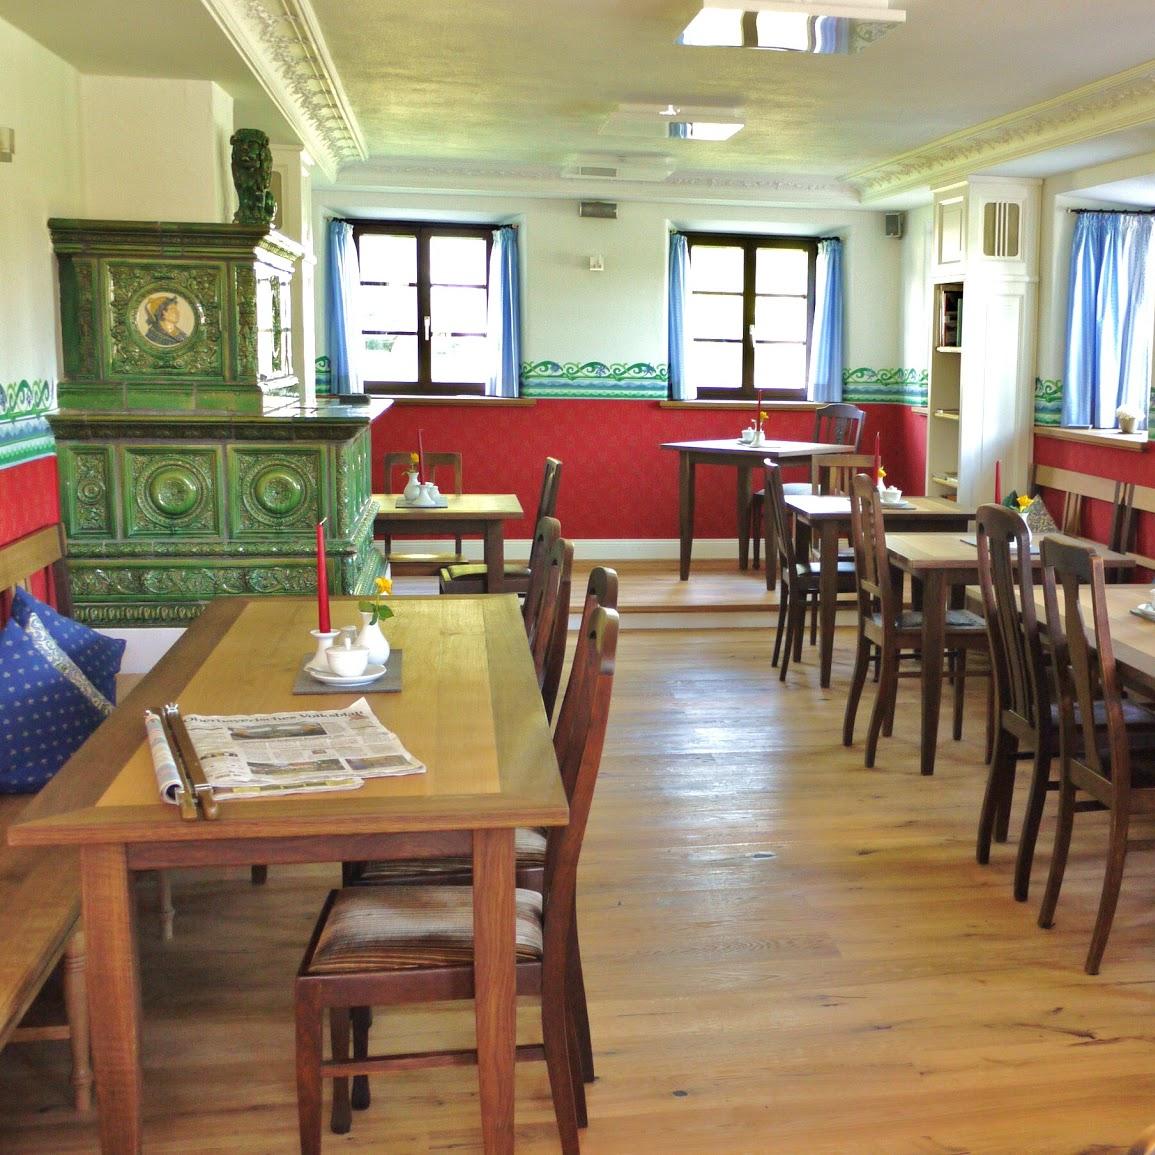 Restaurant "Marxhof Ferienwohnungen und Cafe" in Seeon-Seebruck